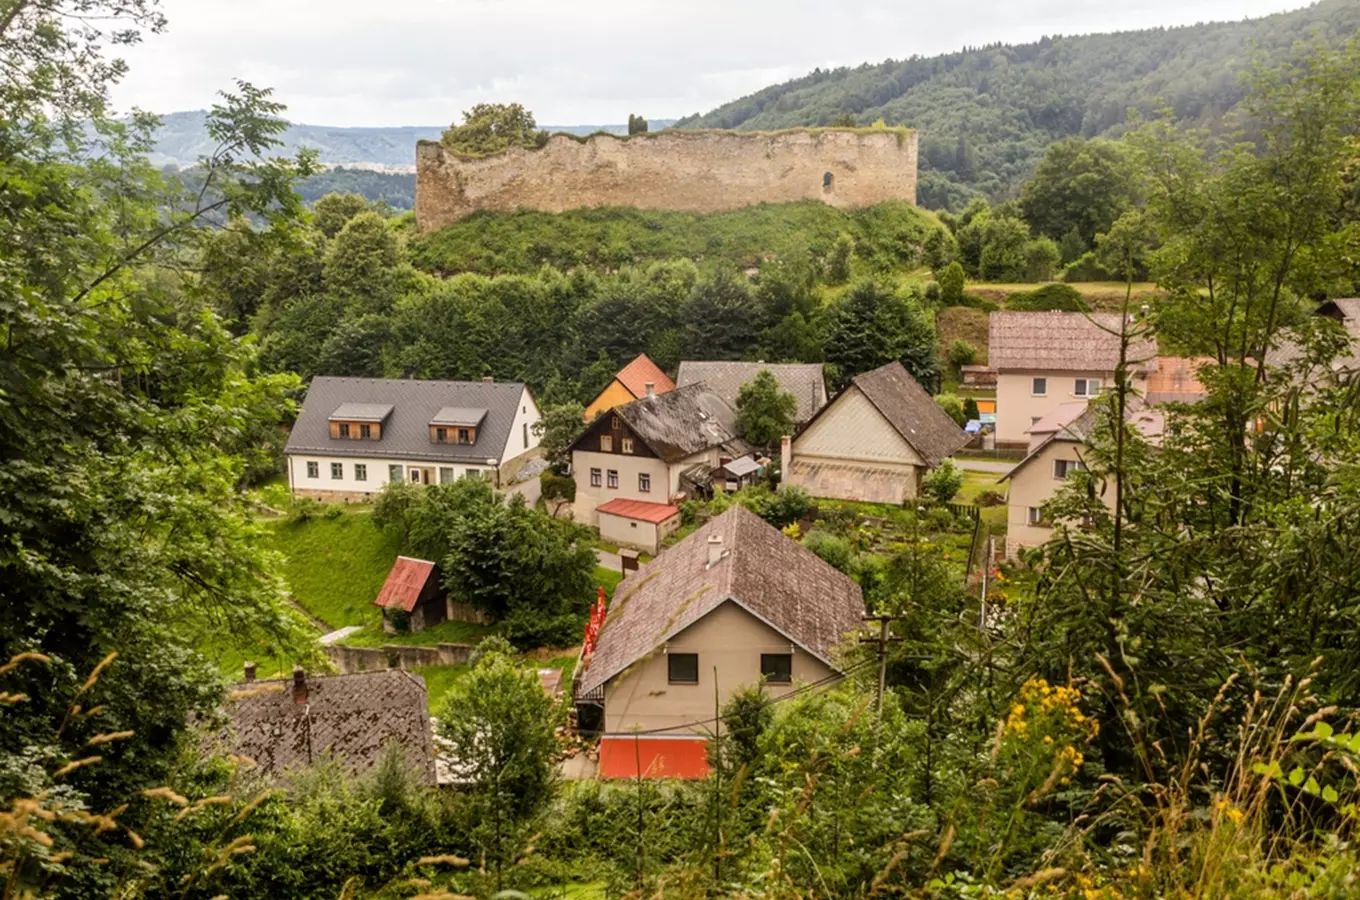 Hrad Lanšperk s rozhlednou – ojedinělý plášťový hrad v Čechách